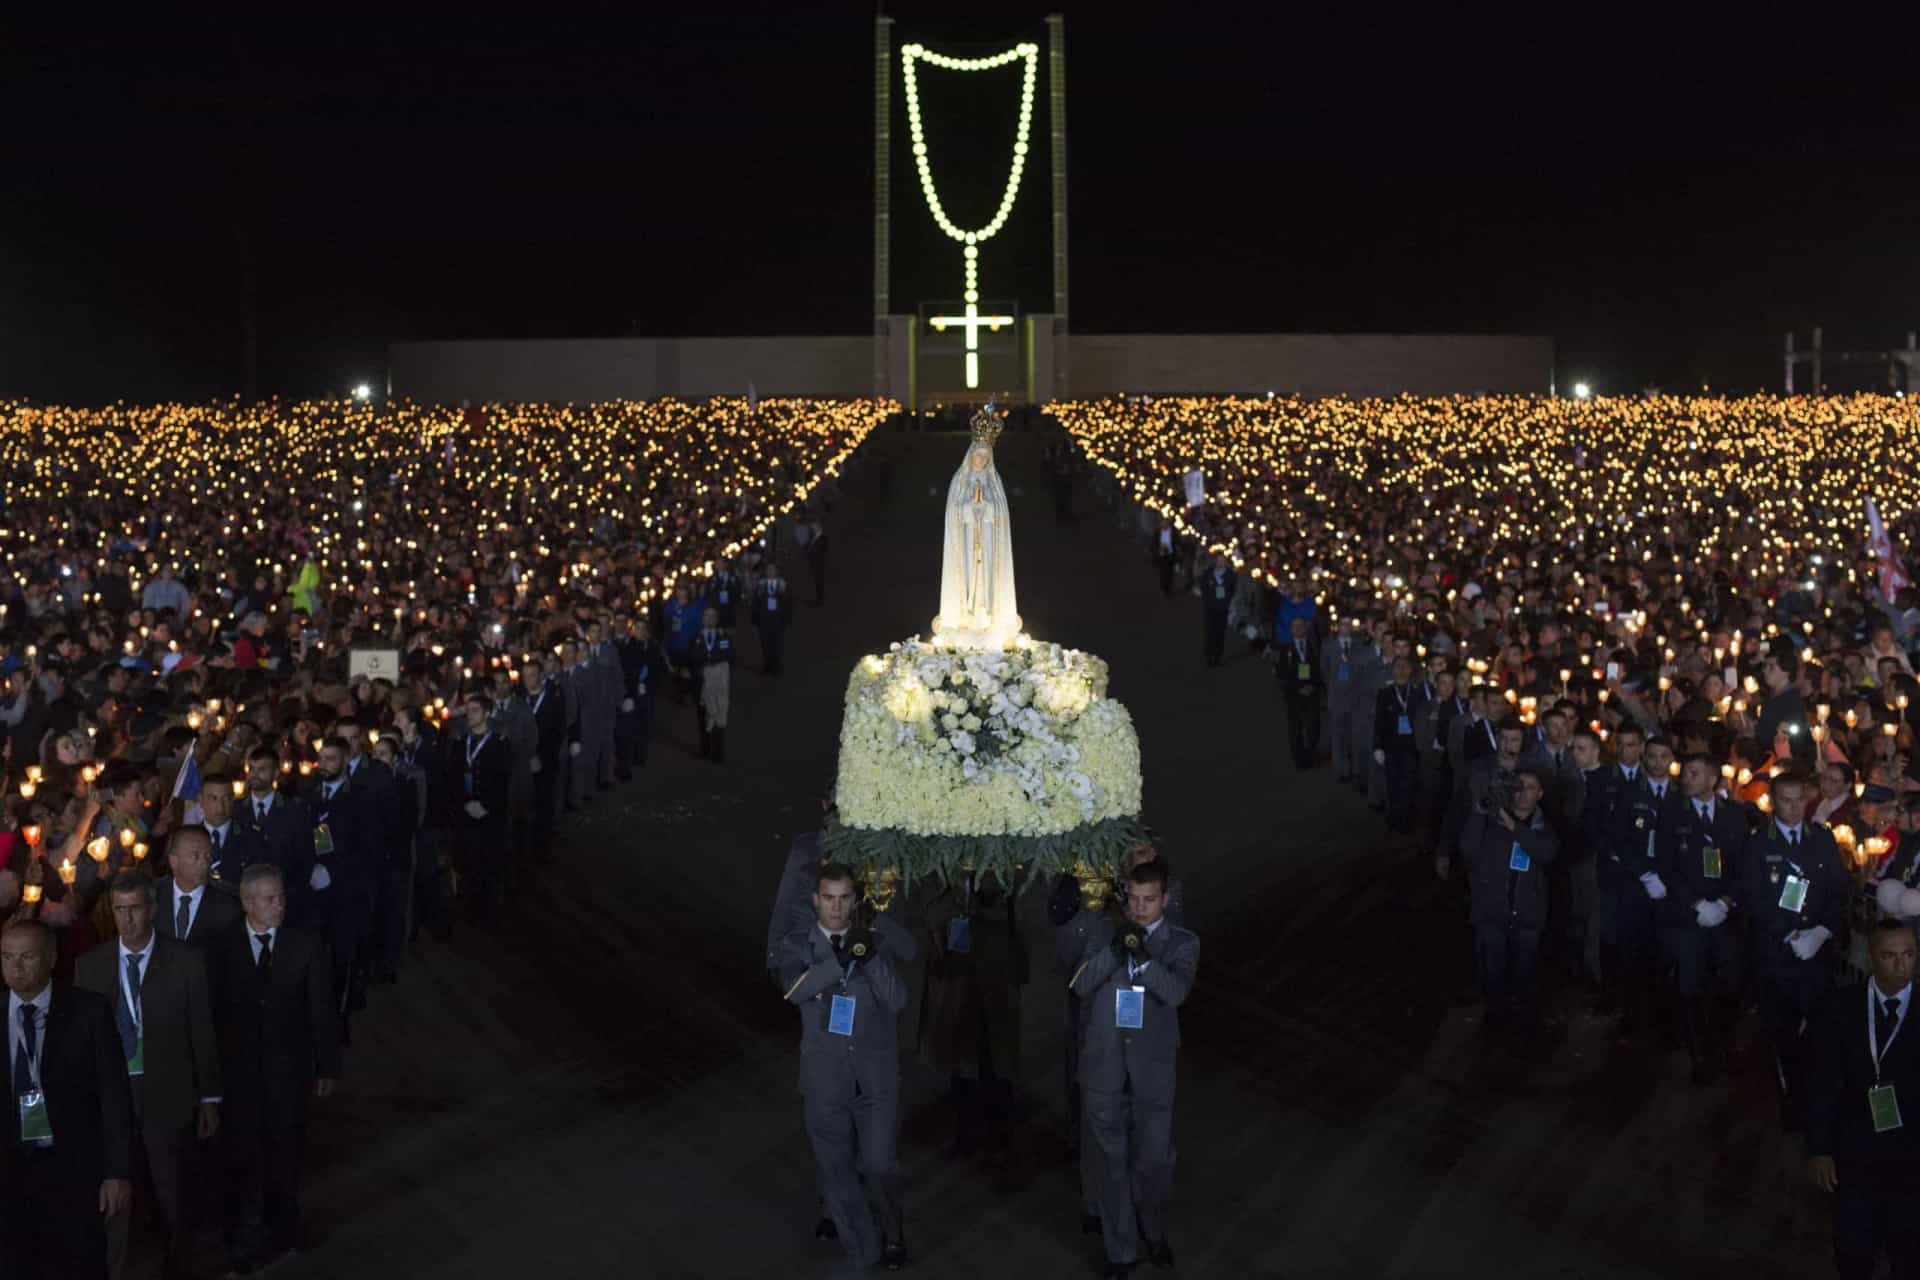 <p>Chaque année, des millions de pèlerins se rassemblent au sanctuaire de Notre-Dame de Fátima pour marquer les anniversaires des apparitions de la Vierge Marie en 1917.</p><p>Découvrez aussi: <a class="gs-title" href="https://www.starsinsider.com/fr/lifestyle/490940/jesus-christ-ces-miracles-dont-il-est-lauteur" rel="noopener">Jésus-Christ: ces miracles dont il est l'auteur</a></p><p>Sources: (<a href="https://www.portugal.com/history-and-culture/what-happened-at-the-miracle-of-fatima/" rel="noopener">Portugal.com</a>) (<a href="https://www.ocp.org/en-us/blog/entry/our-lady-of-fatima-centennial" rel="noopener">Oregon Catholic Press</a>) (<a href="https://www.cath.ch/newsf/fatima-histoire-dun-siecle-deux-ans/">Cath.ch</a>)</p>